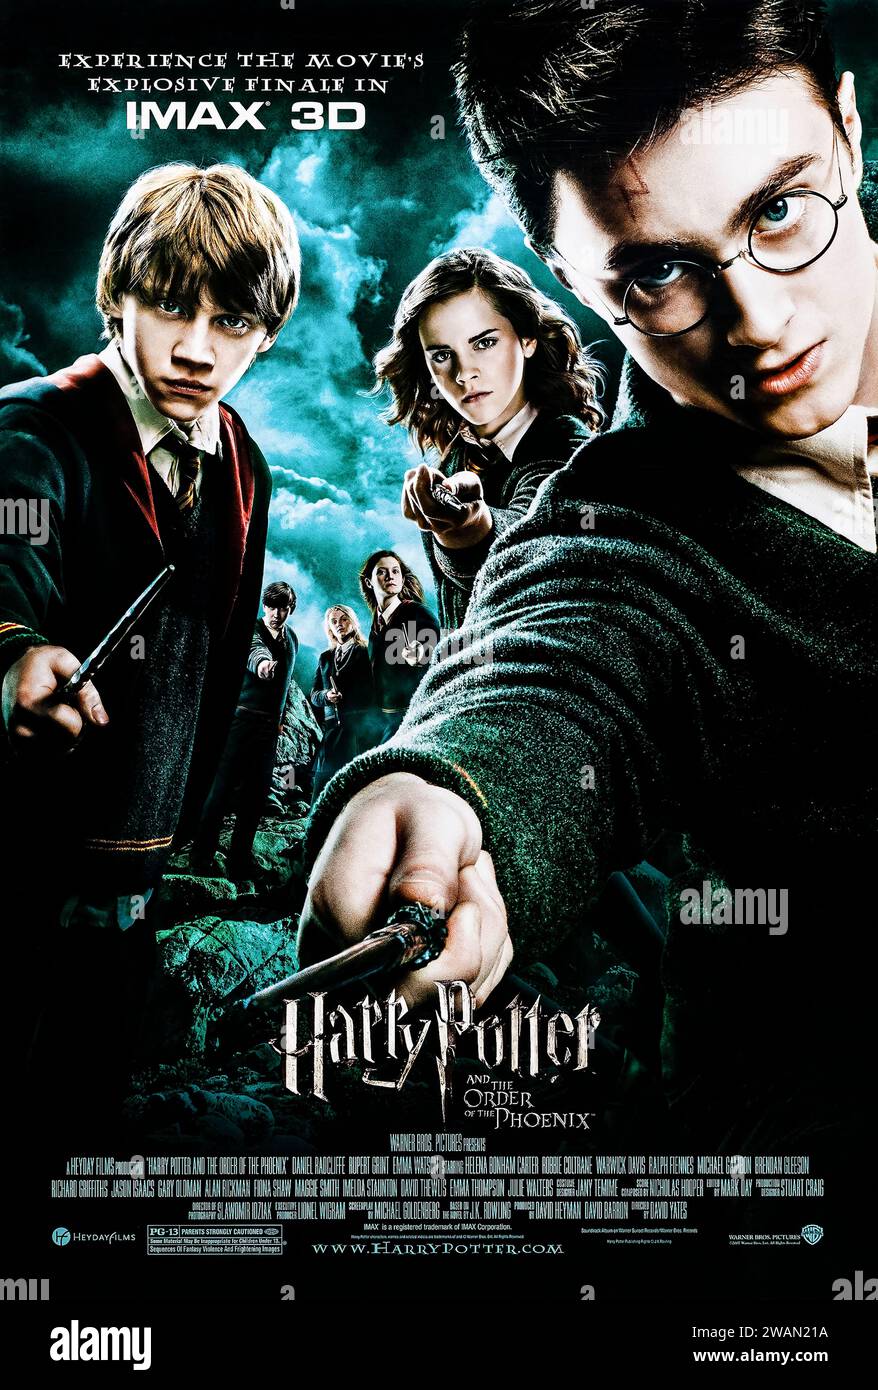 Harry Potter and the Order of the Phoenix (2007) von David Yates mit Daniel Radcliffe, Emma Watson und Rupert Grint. Als ihre Warnung vor Lord Voldemorts Rückkehr verspottet wurde, werden Harry und Dumbledore von den Zauberern angegriffen, als ein autoritärer Bürokrat langsam die Macht in Hogwarts übernimmt. Foto eines Original-Posters aus dem Jahr 2007 (US-1-Blatt). ***NUR REDAKTIONELLE VERWENDUNG*** Credit: BFA / Warner Bros Stockfoto